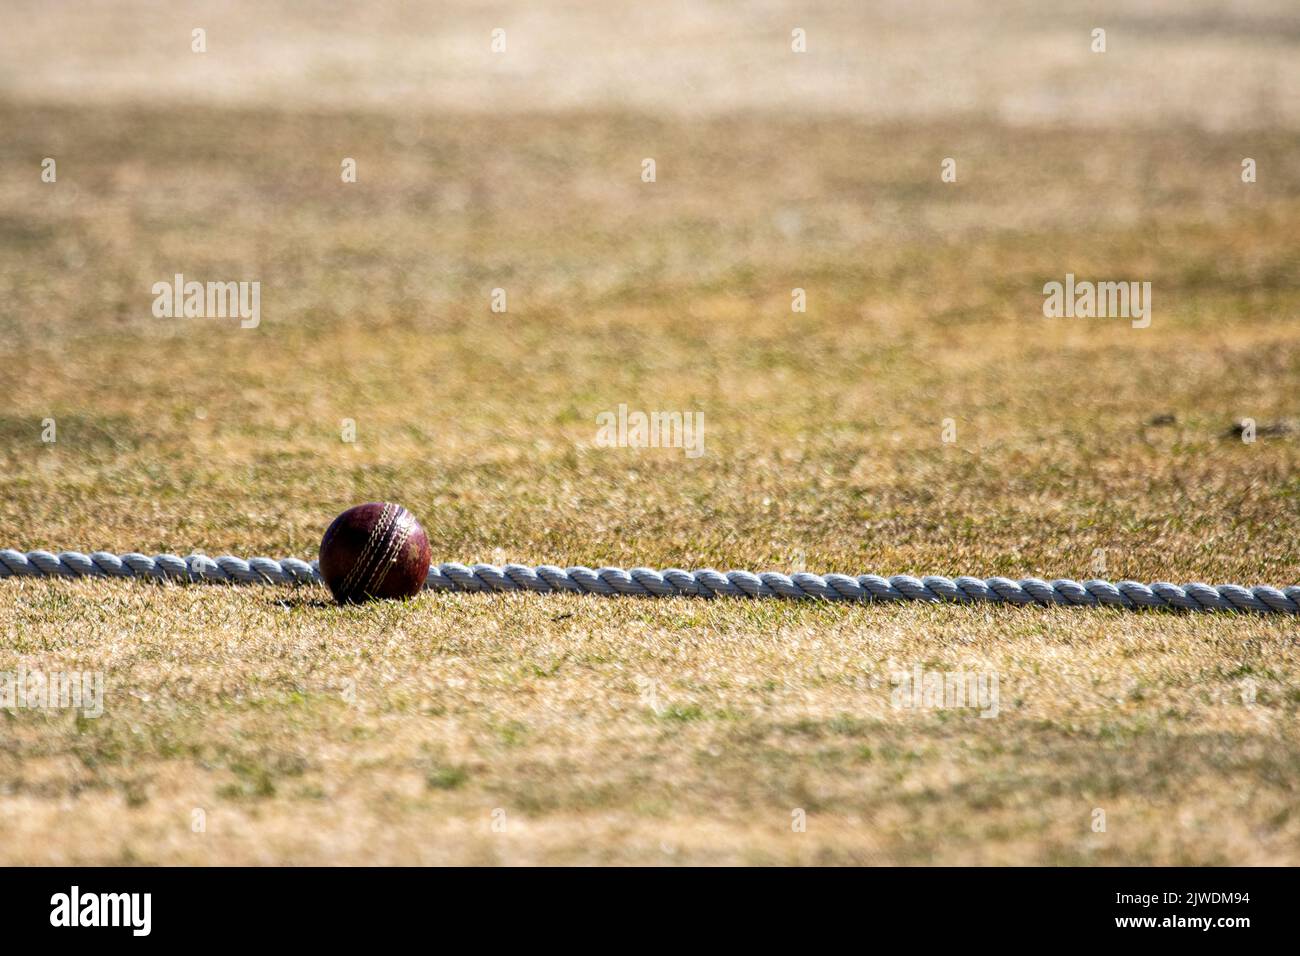 Ein Cricket-Ball, der bei heißem, trockenem Wetter auf dem Begrenzungsseil sitzt Stockfoto